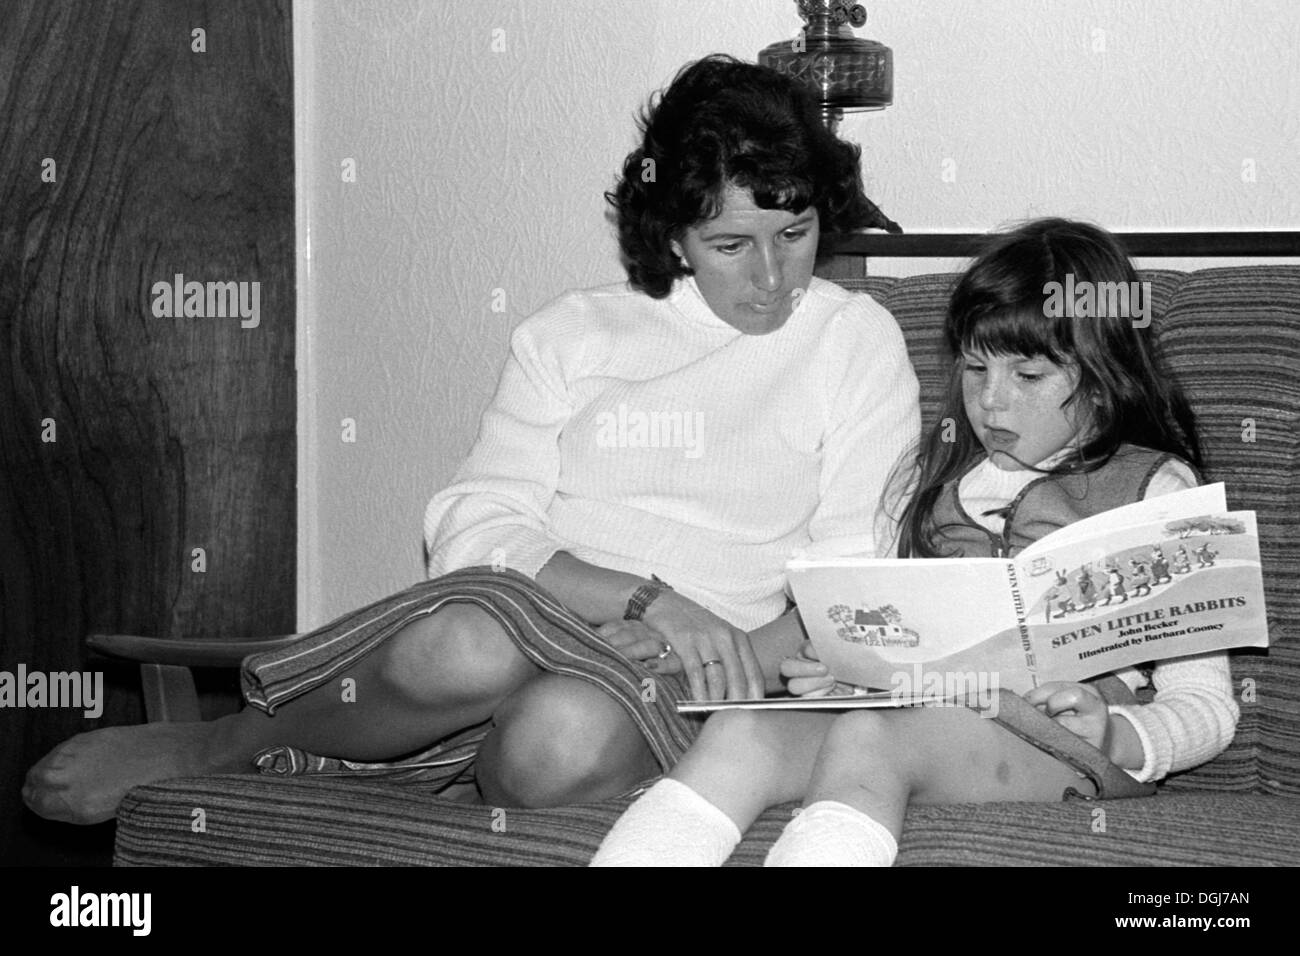 Mutter wacht über junge Tochter, wie sie ihre Lesung während der 1970er Jahre Großbritannien praktiziert Stockfoto